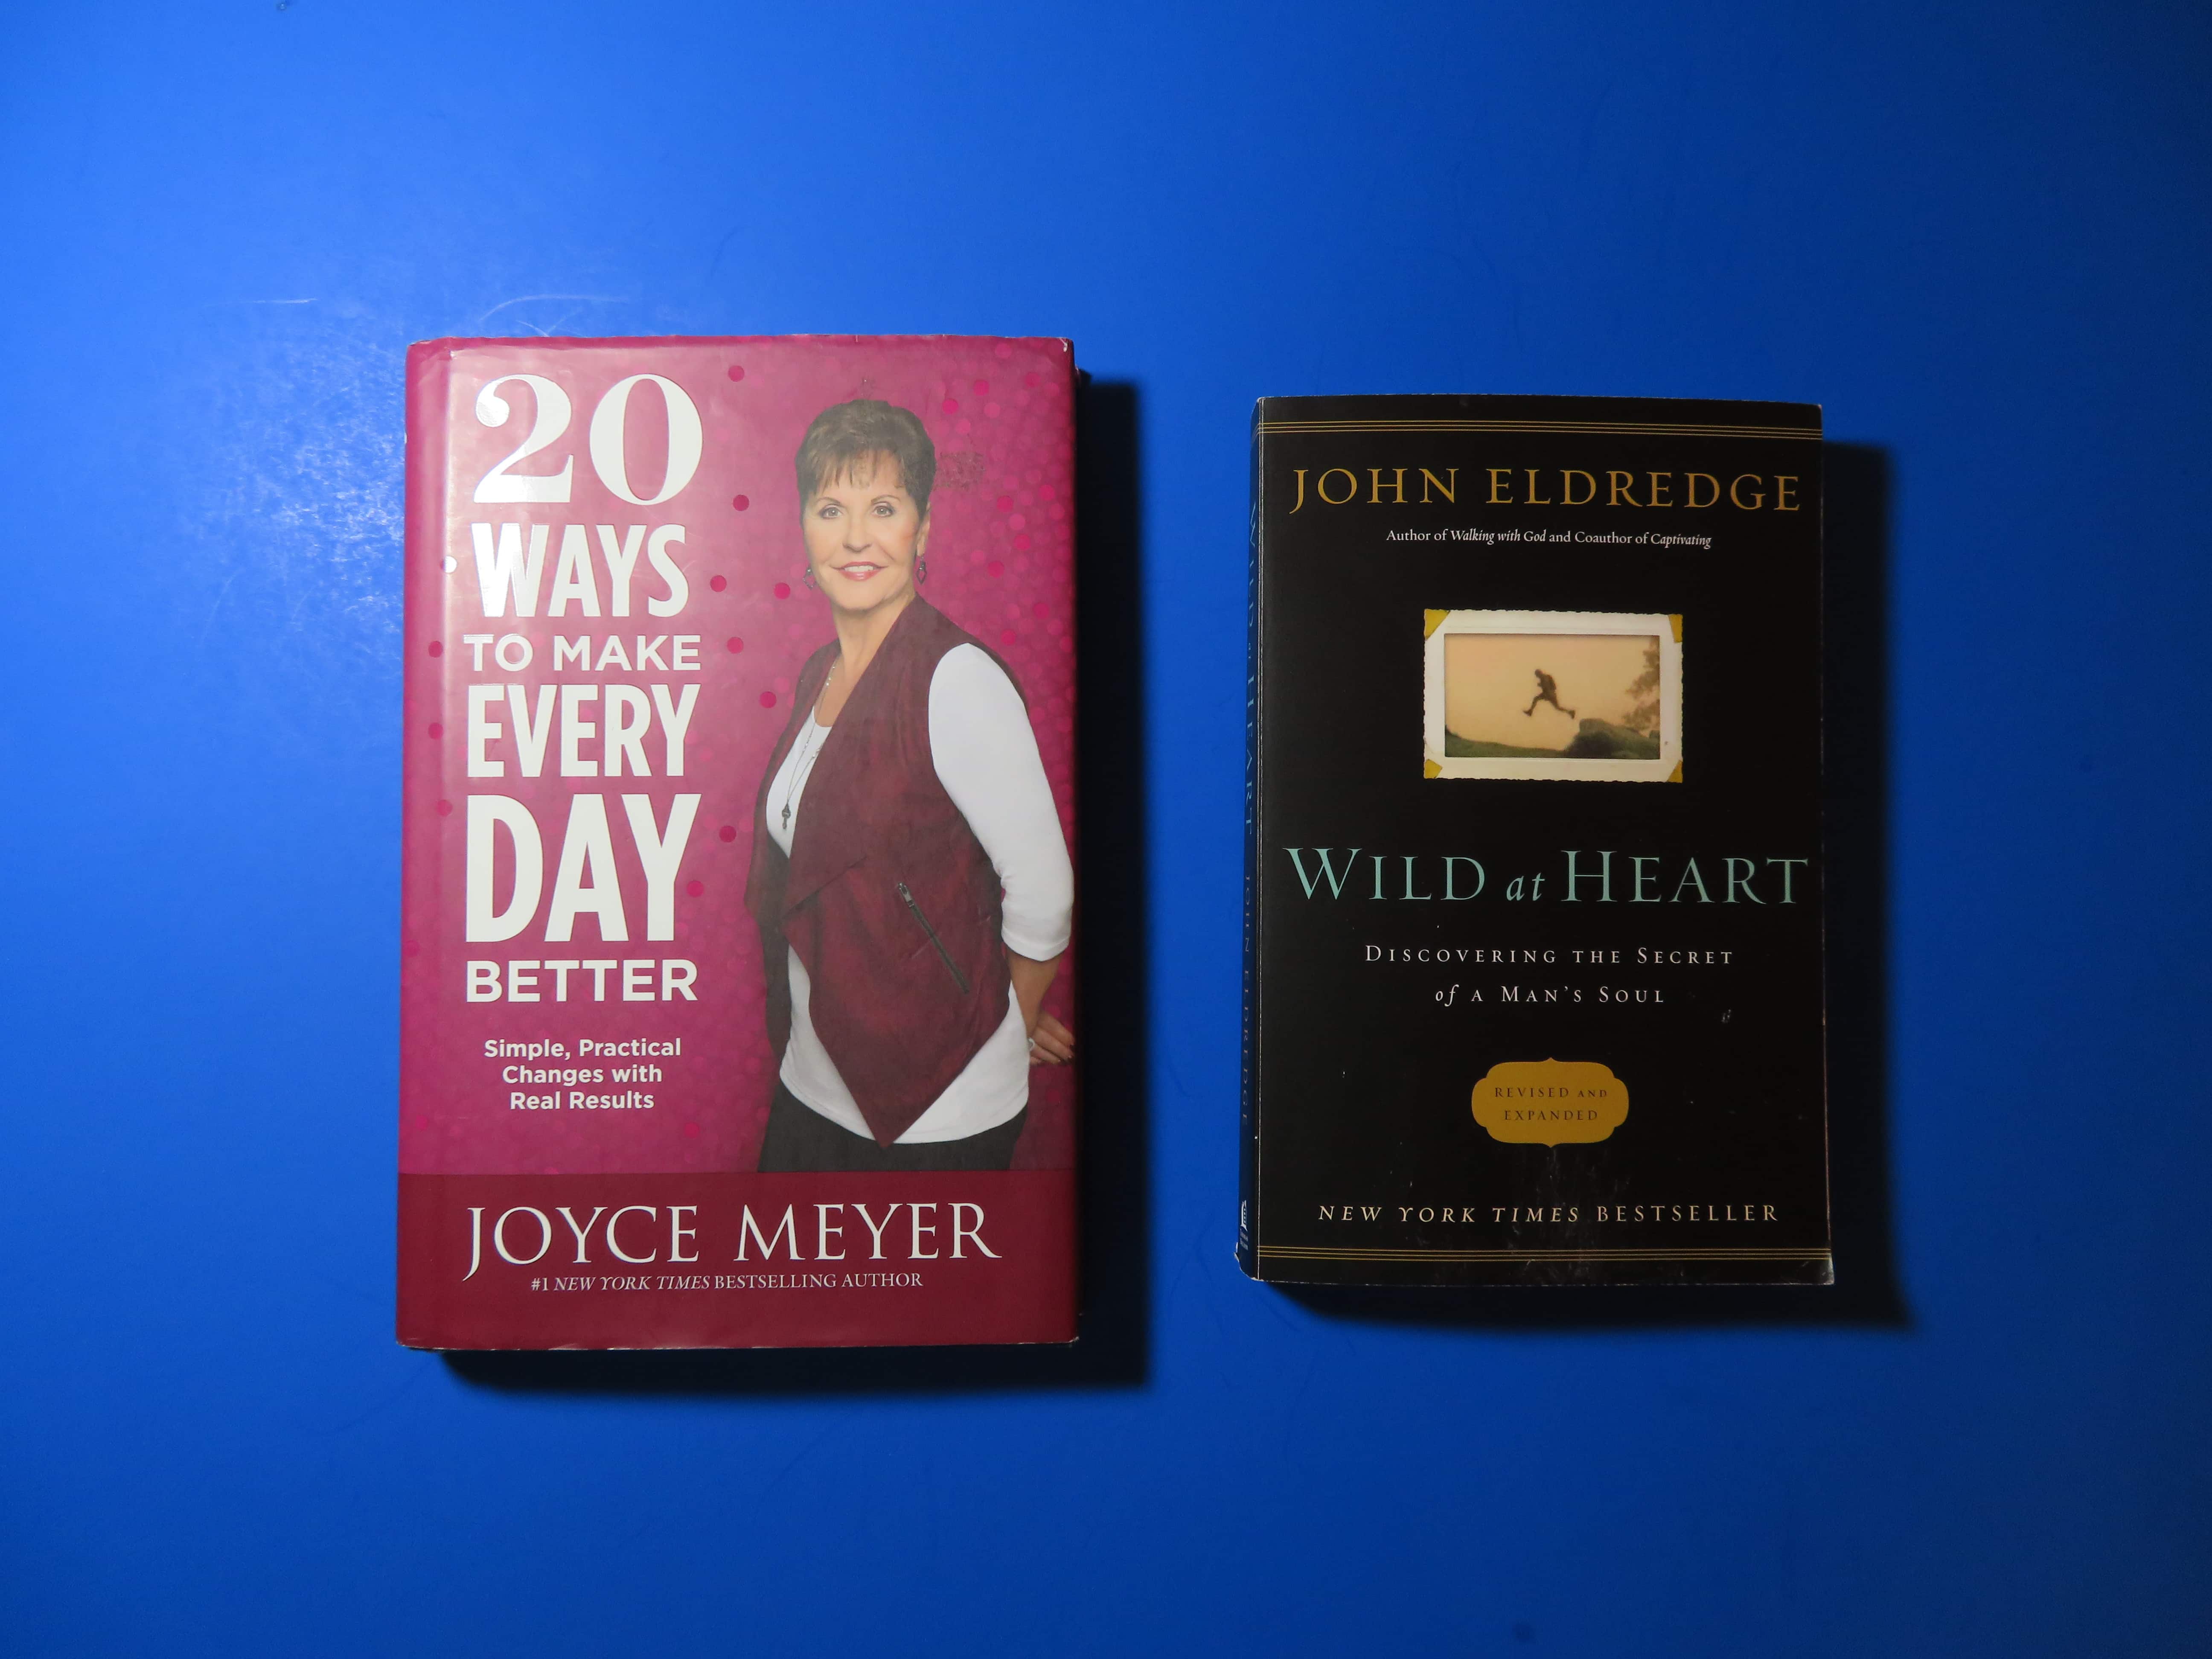 Joyce Myer's and John Eldredge's books